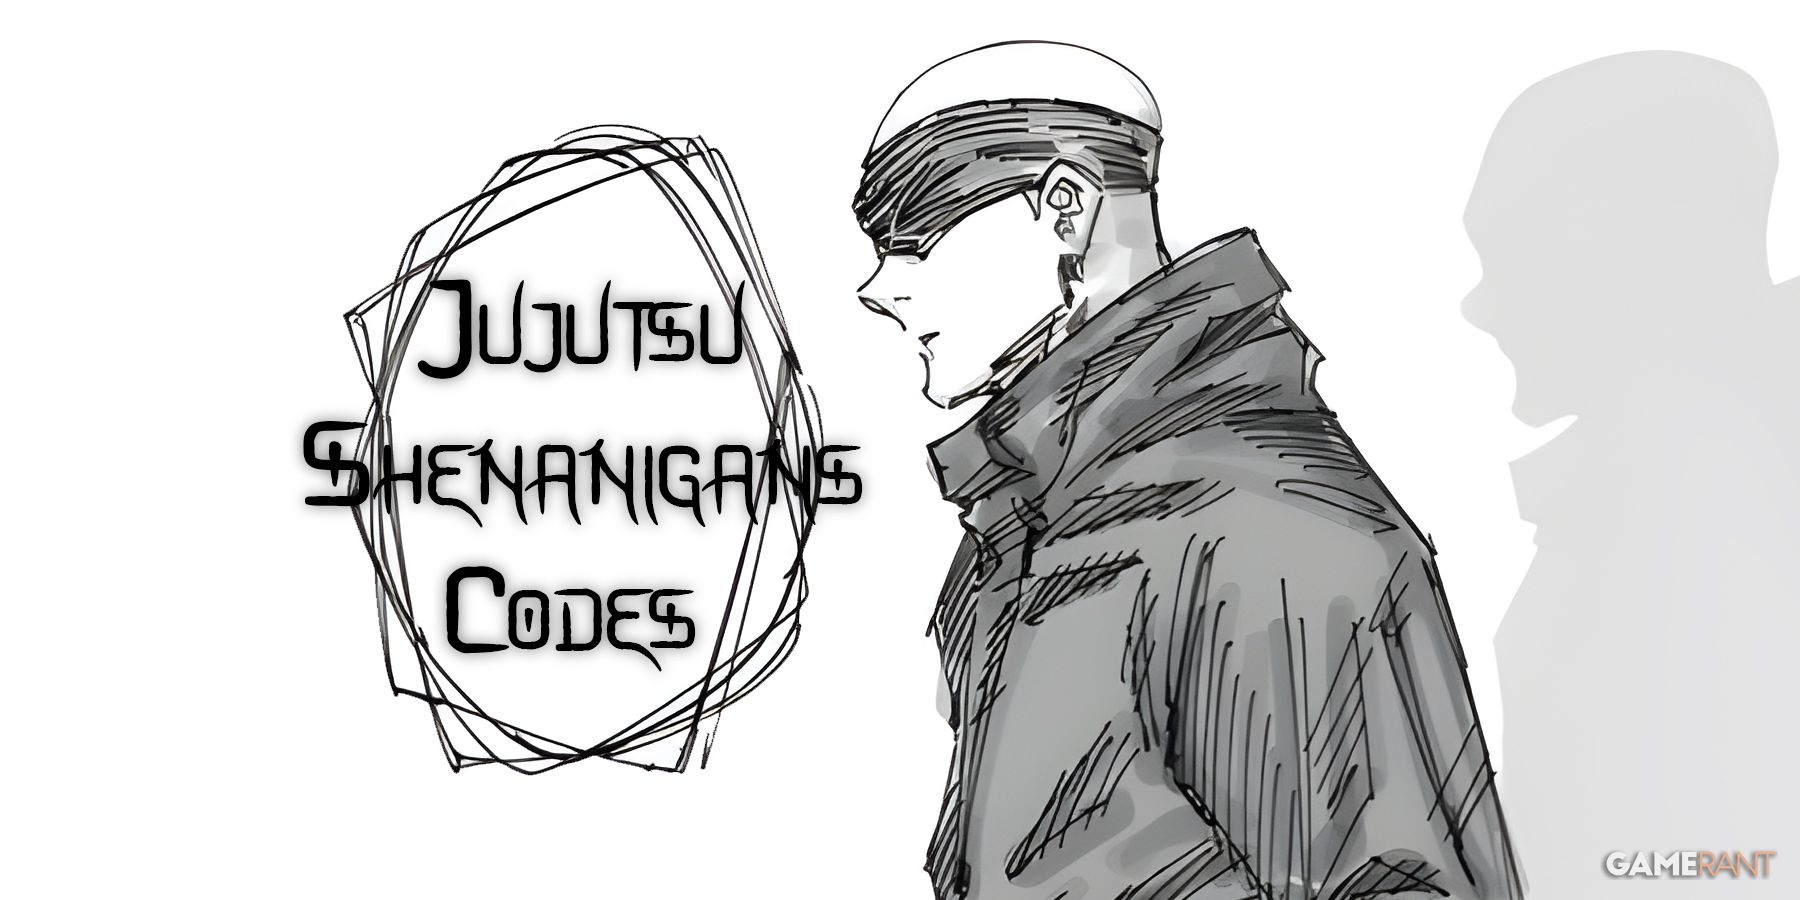 jujutsu-shenanigans-codes-featured